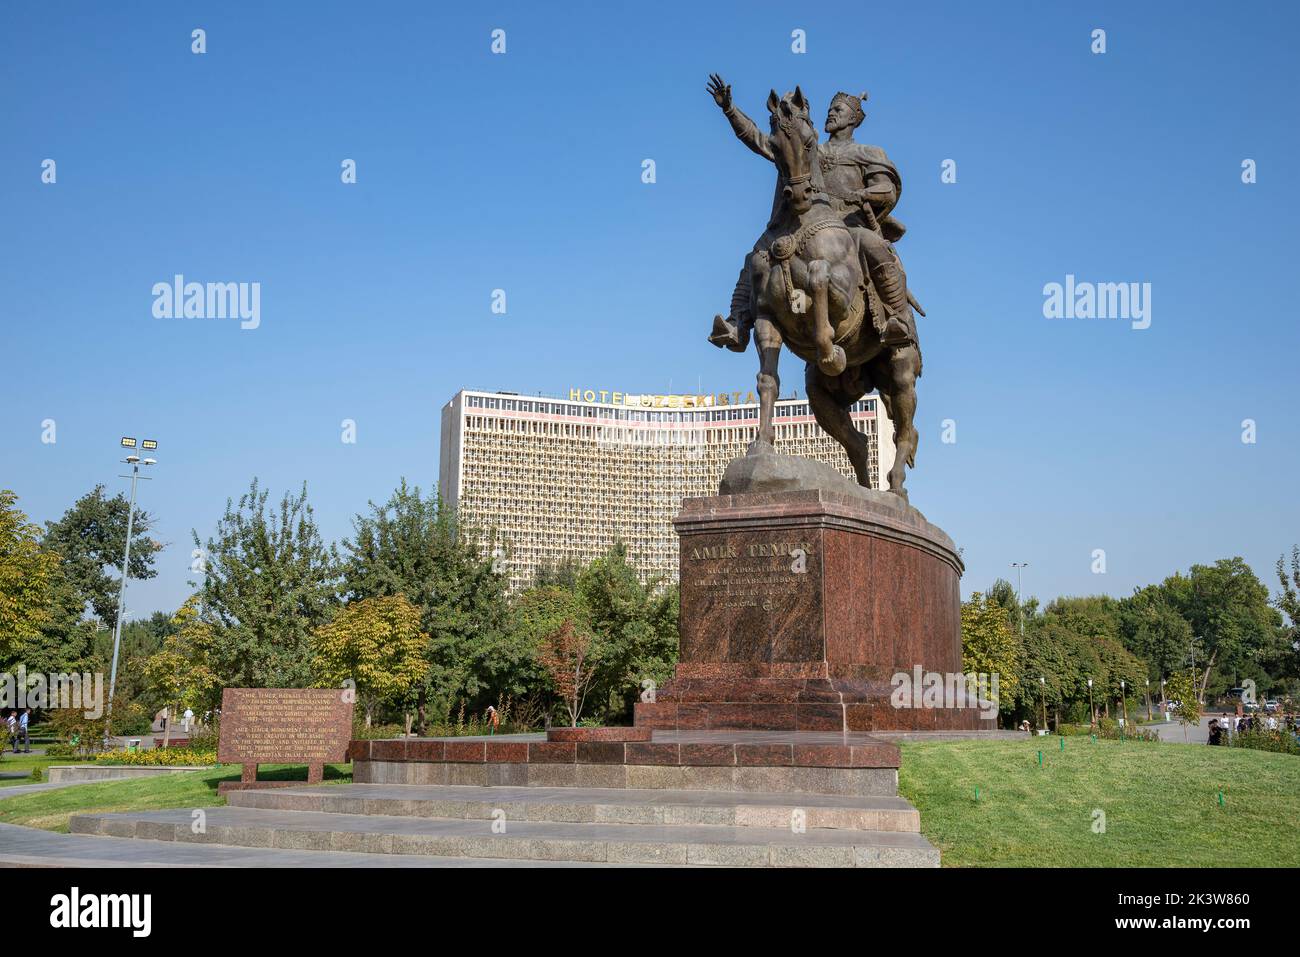 TASHKENT, UZBEKISTAN - SEPTEMBER 15, 2022: Monument to Amir Timur (Tamerlane) on the background of the Uzbekistan Hotel. Tashkent, Uzbekistan Stock Photo